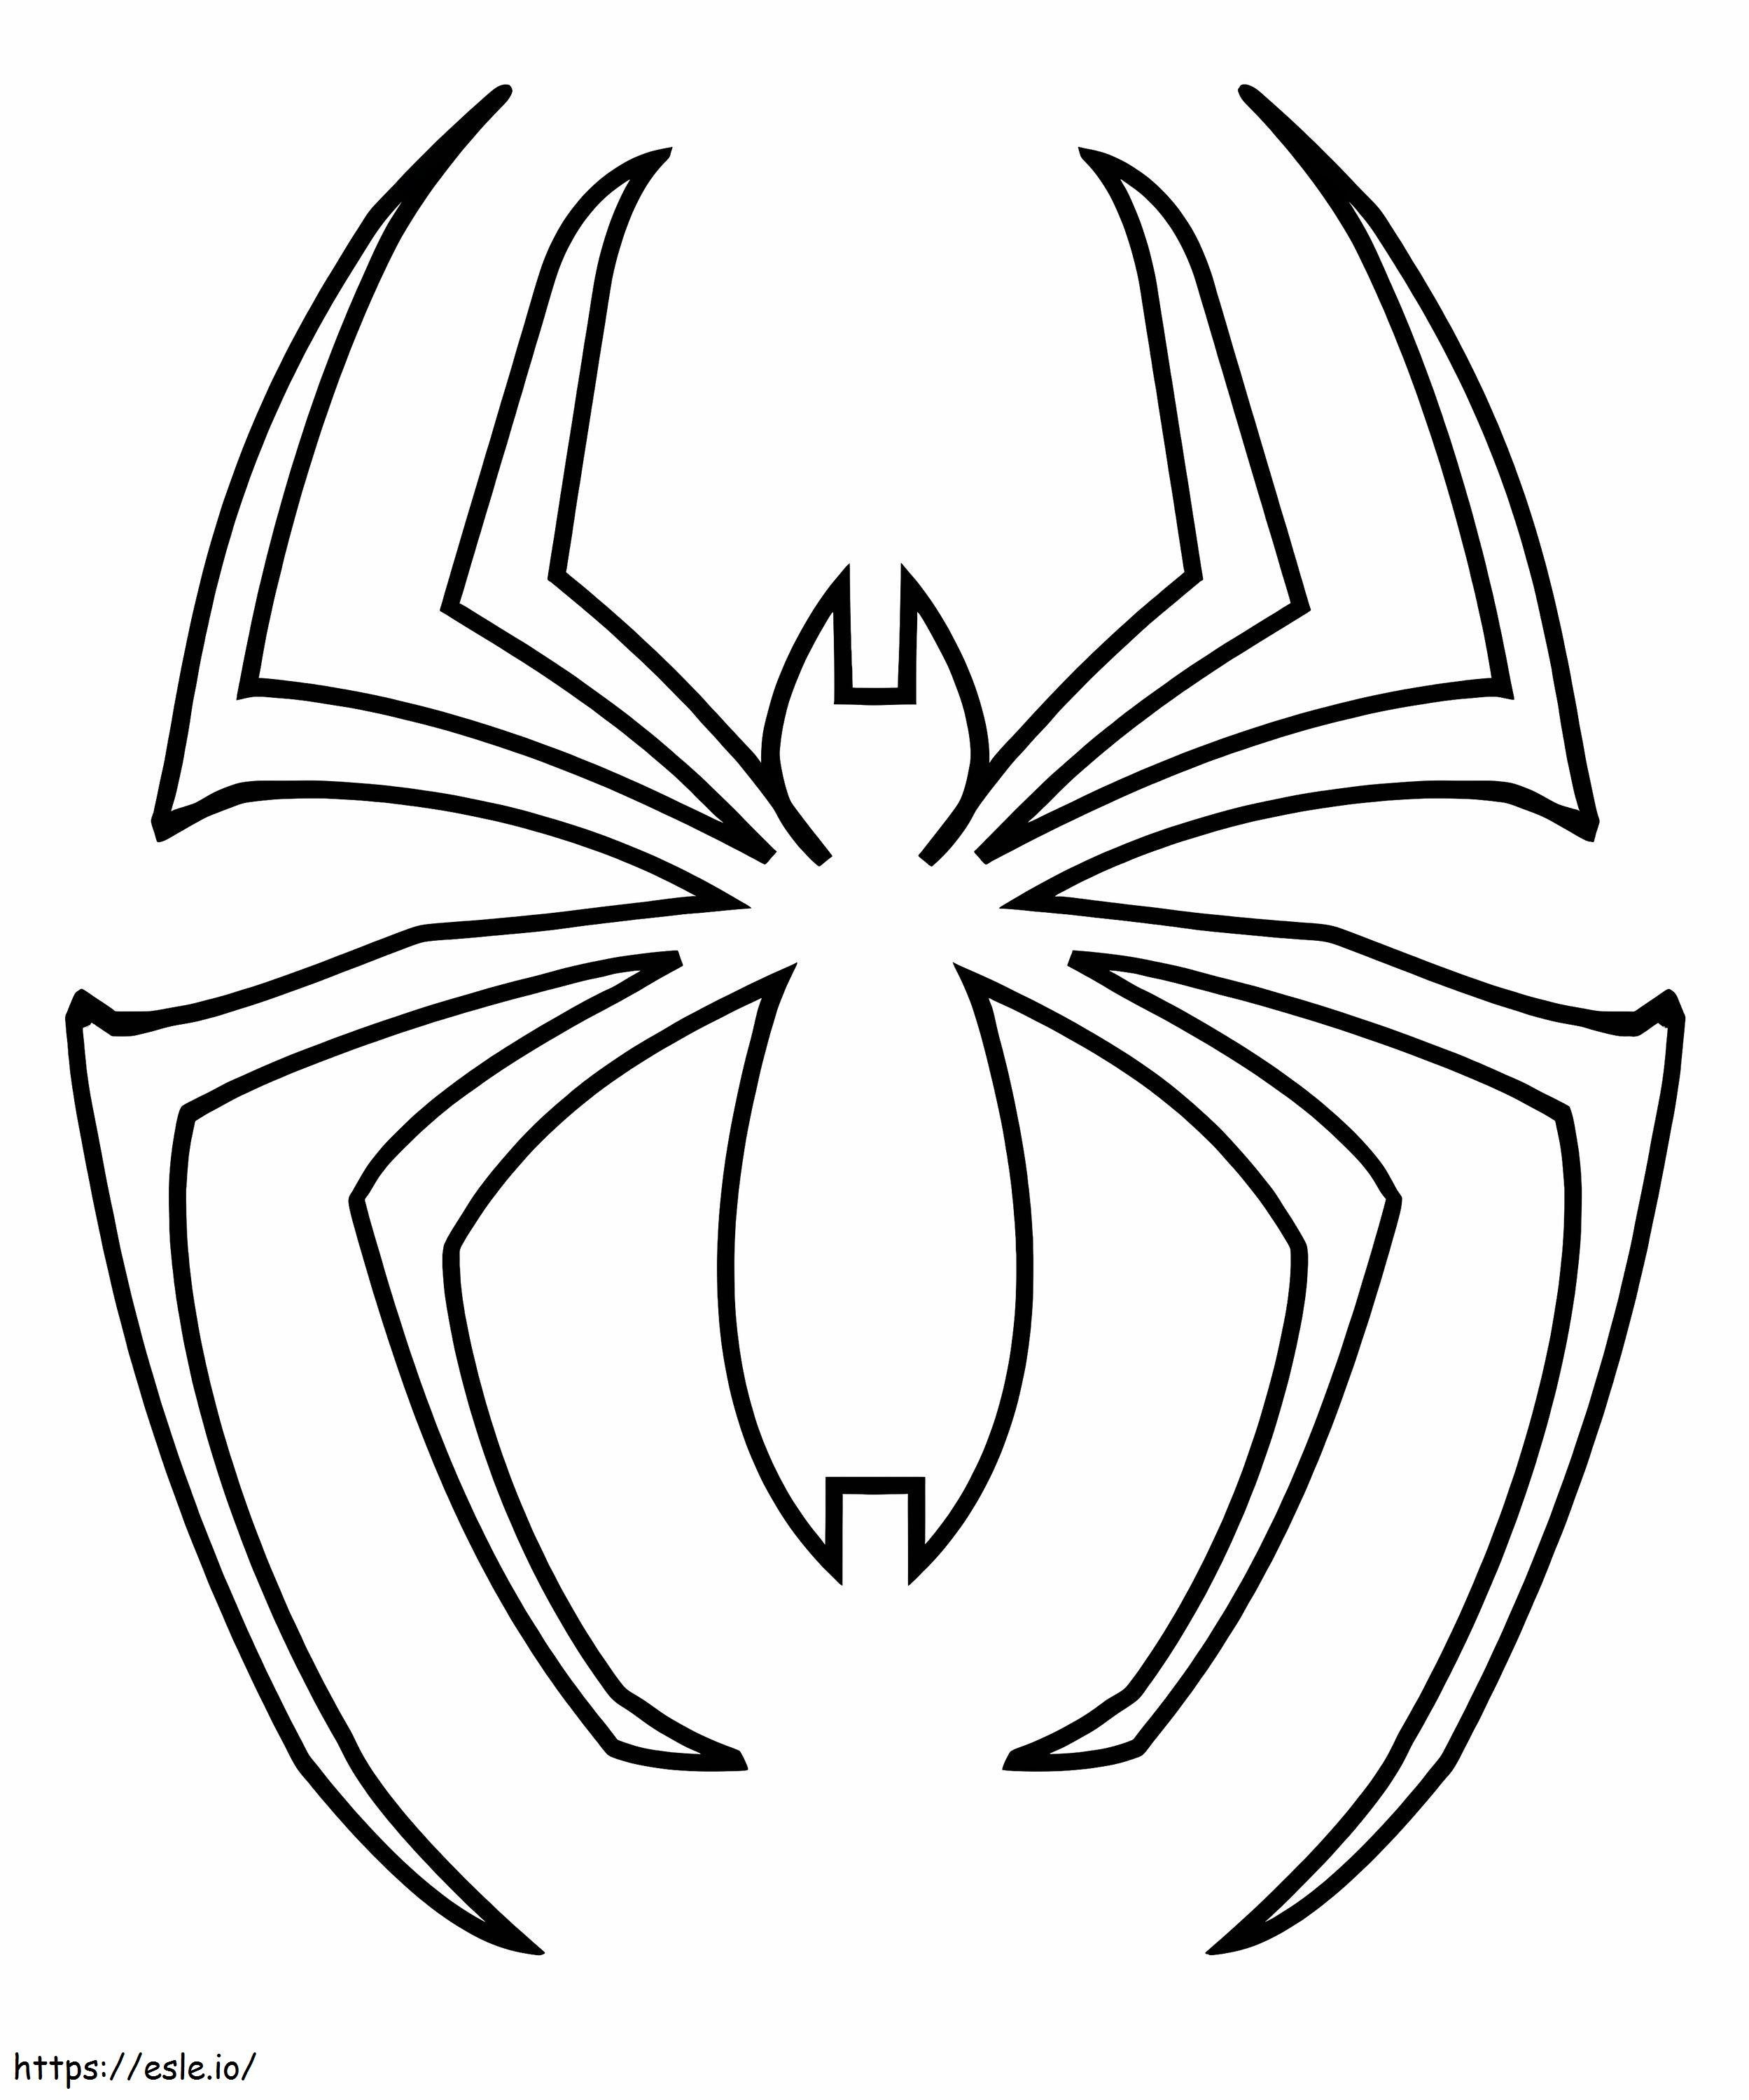 örümcek adam logosu boyama